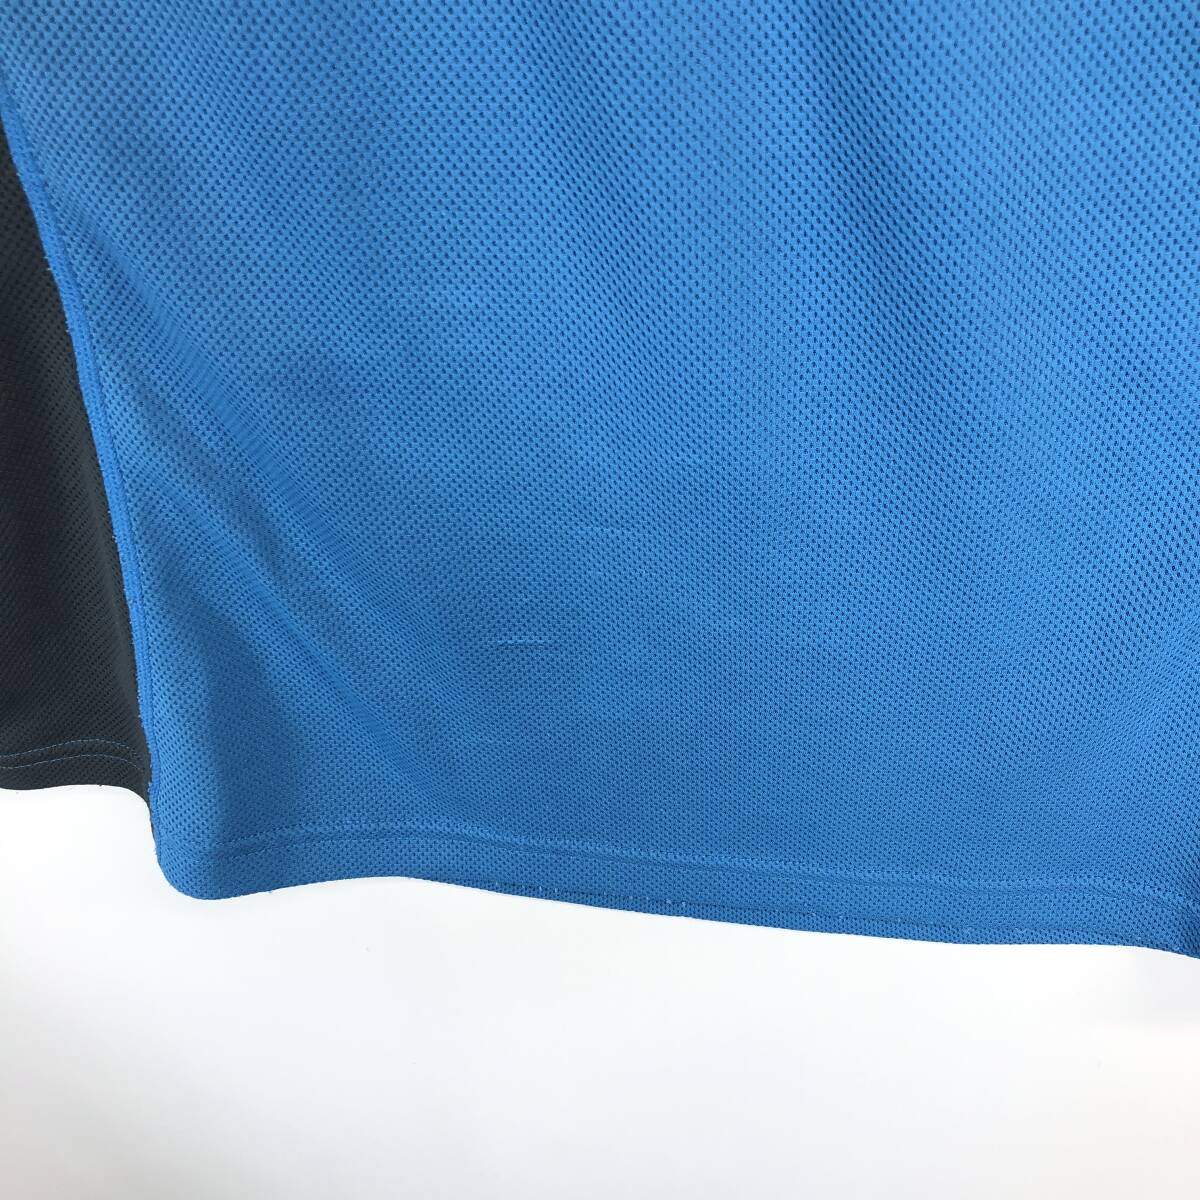 モンベル(montbell) クールラグラン ジップシャツ Women's 1104692 Lサイズ ブルー系 速乾